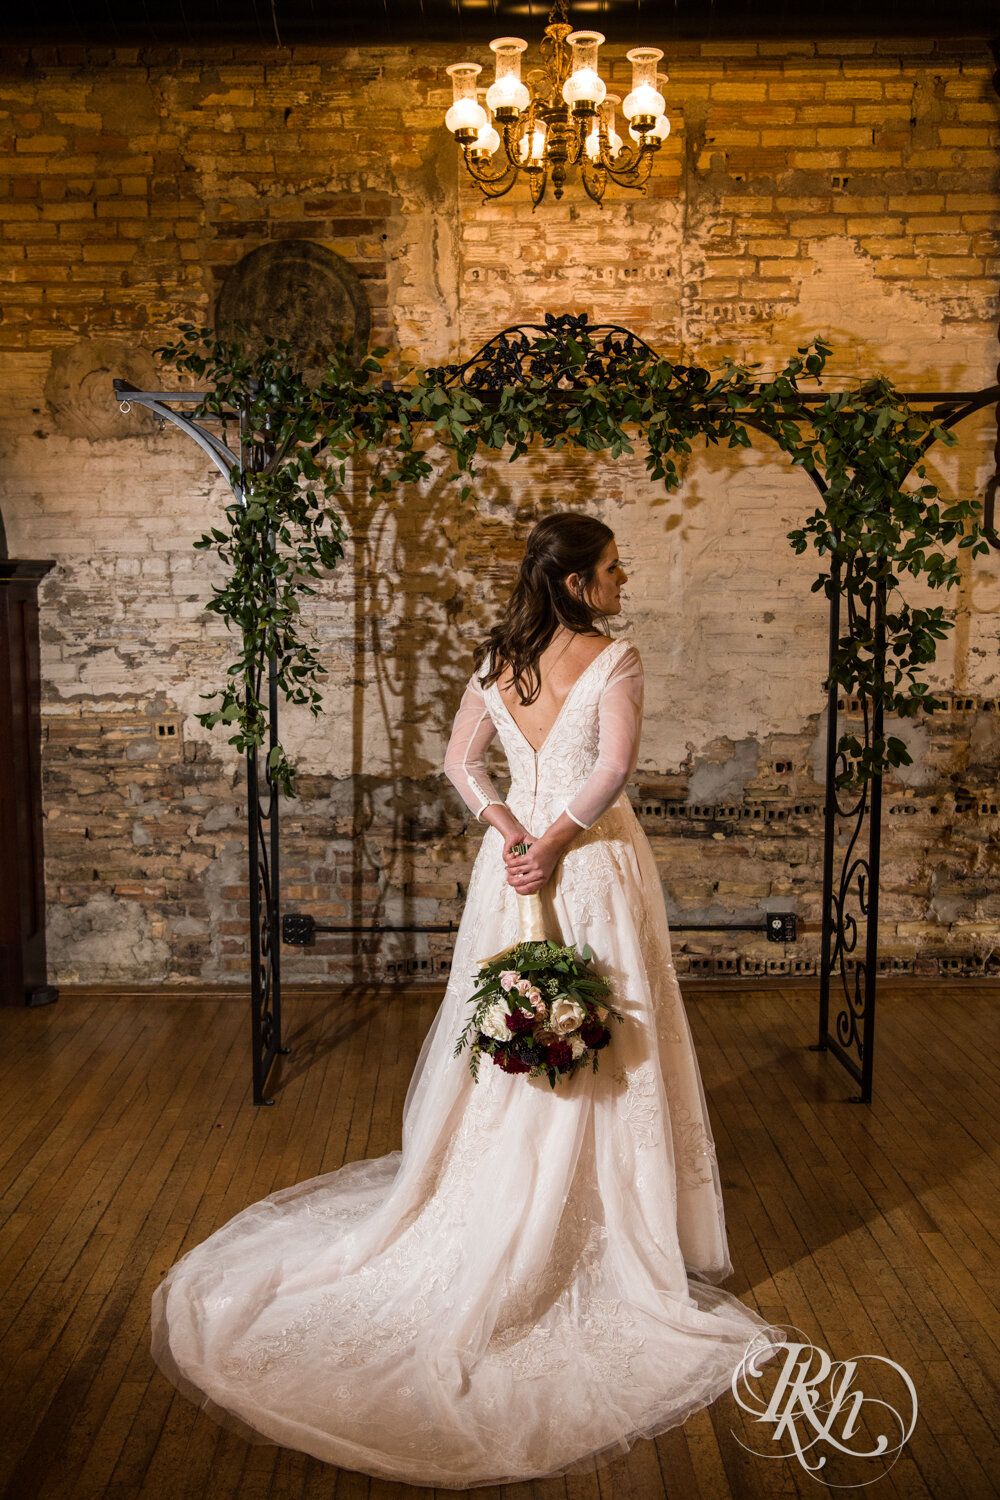 Bride holds flowers at Kellerman's Event Center in White Bear Lake, Minnesota.